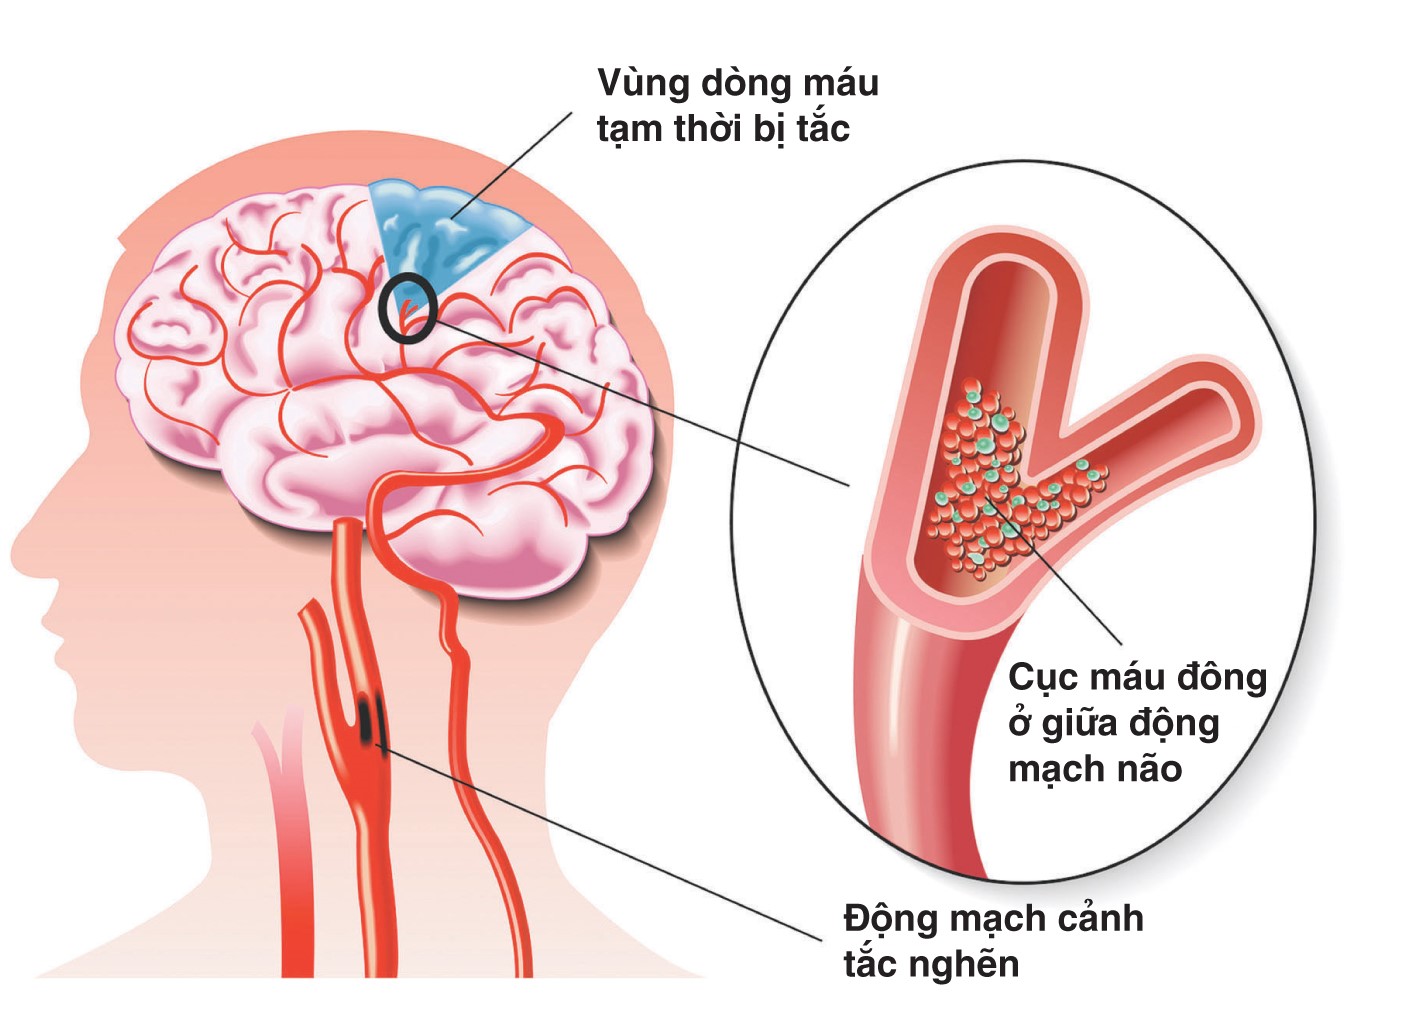 Viên uống bổ não cho người tai biến - Bệnh lý mạch máu nhỏ do cao huyết áp